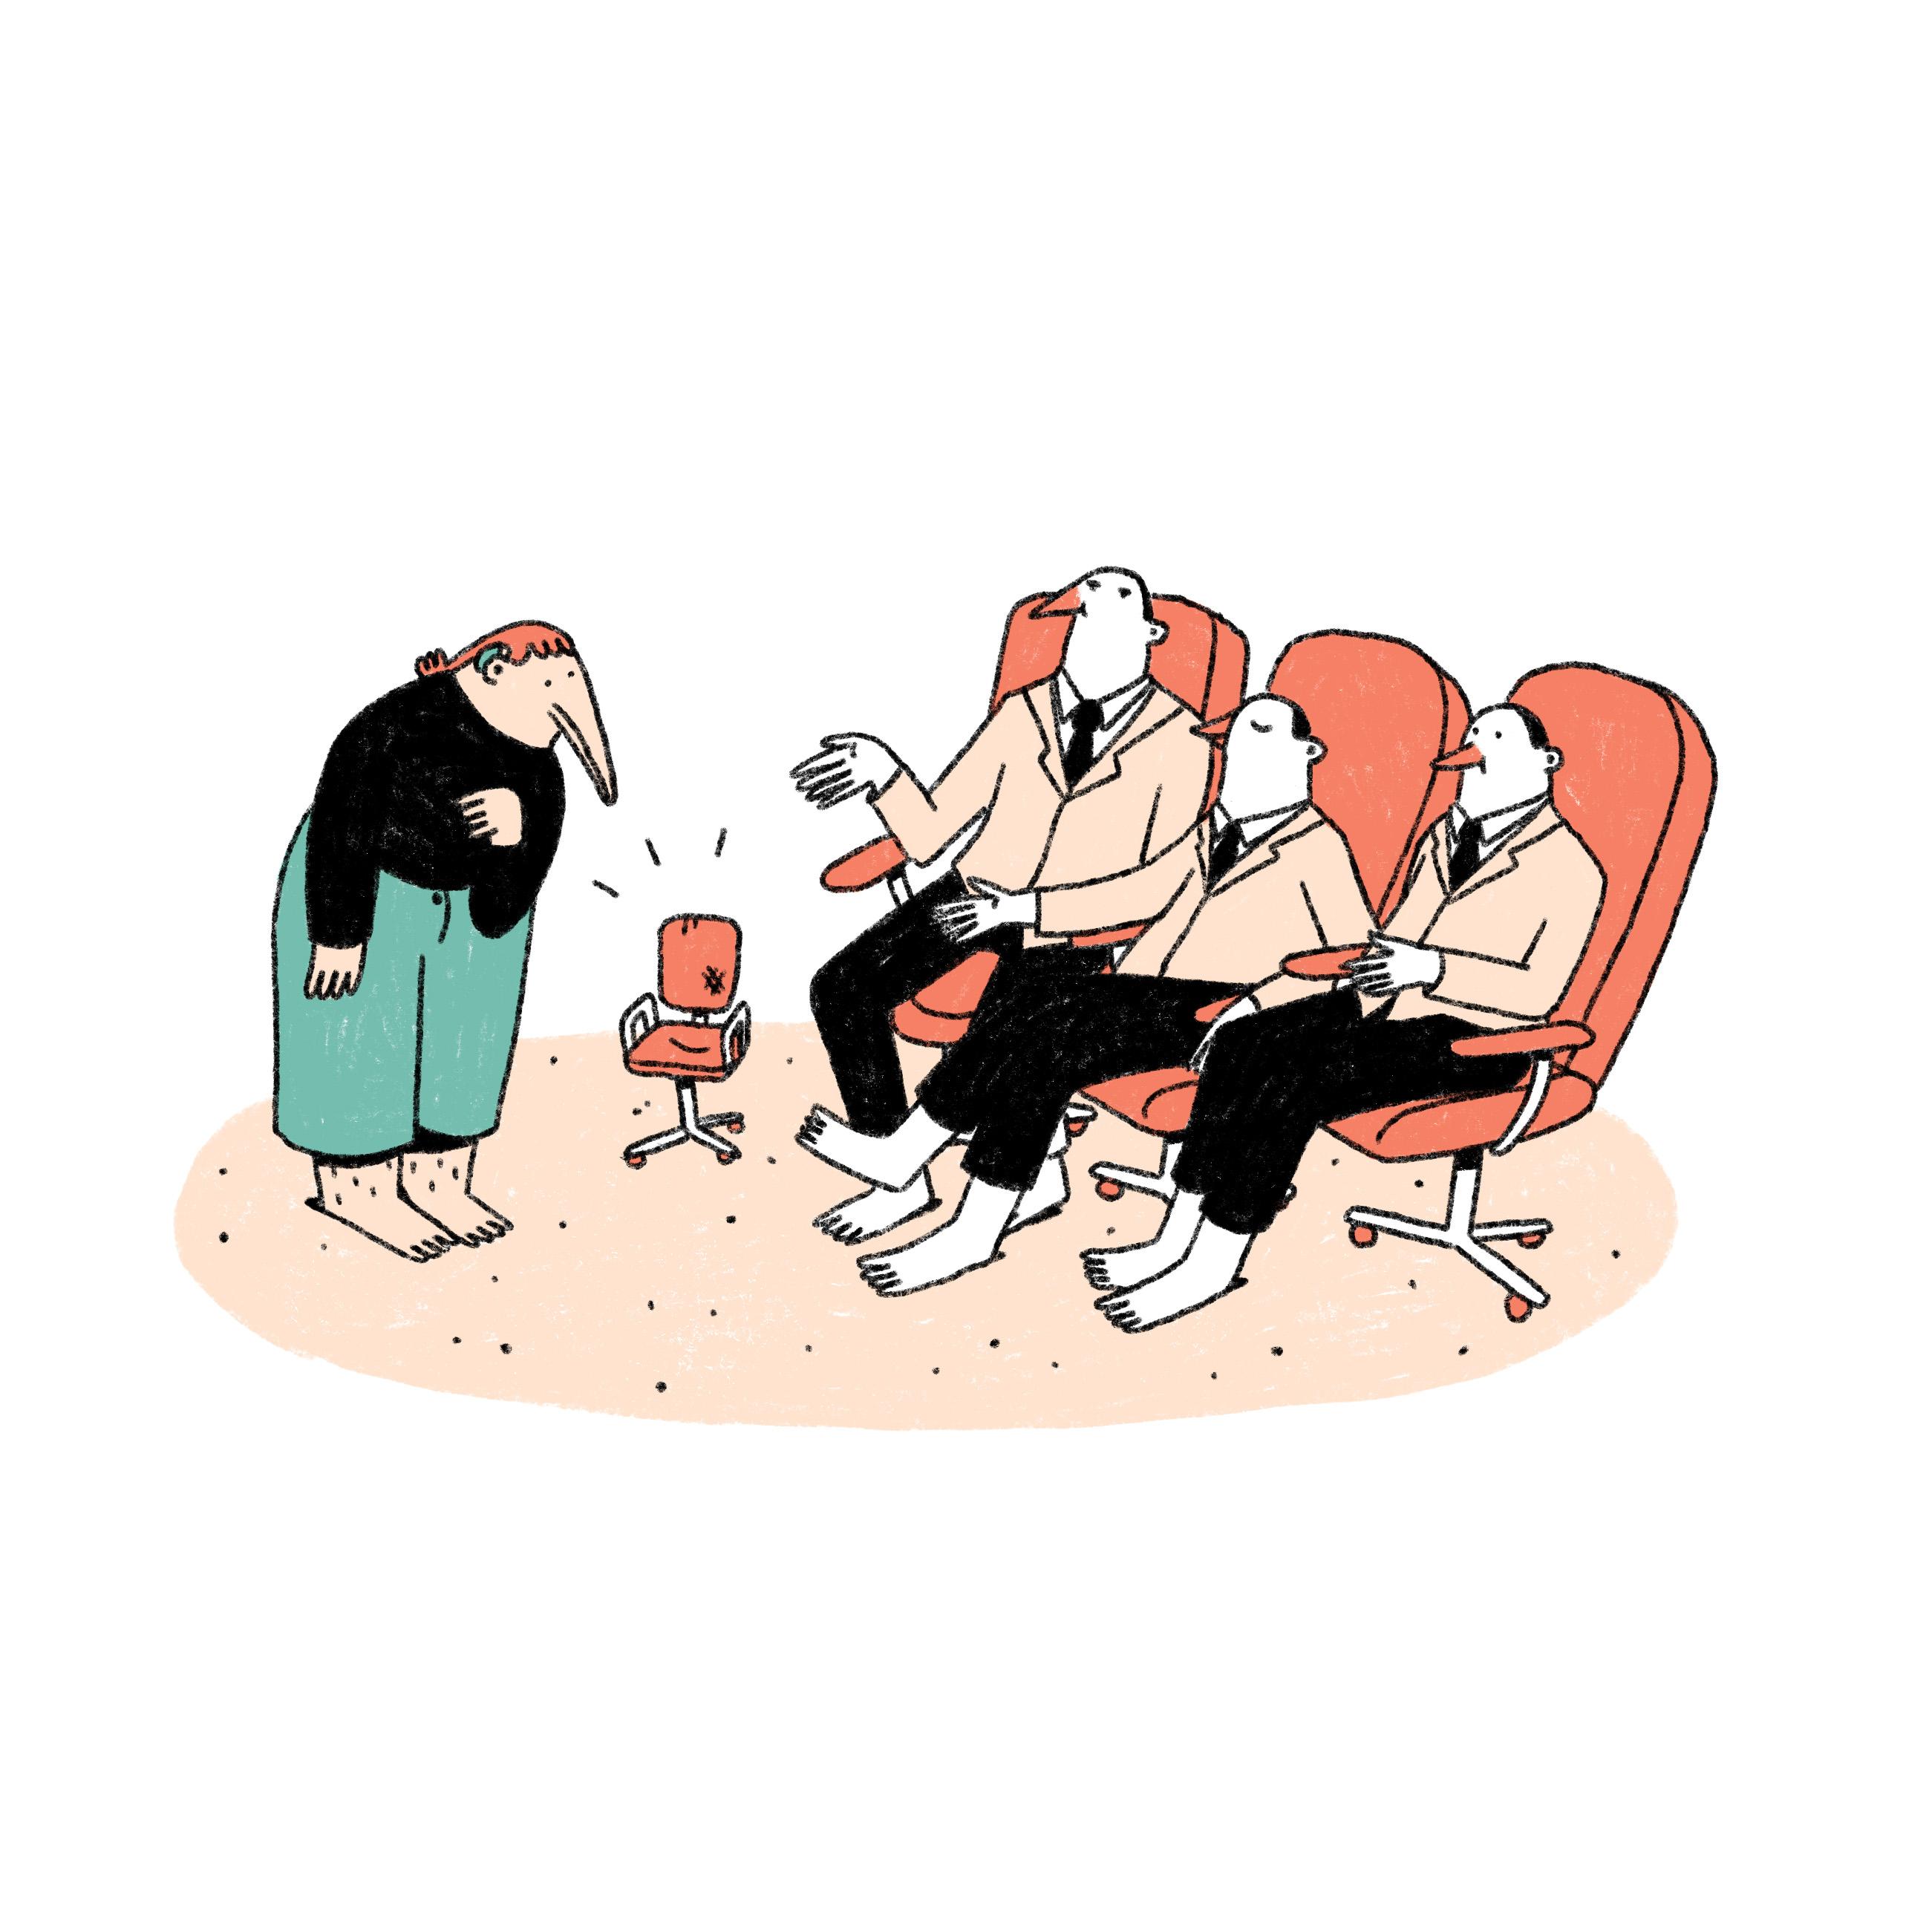 Einer weiblich gelesenen Figur wird von drei anderen Figuren ein winzig kleiner Sessel angeboten, während diese selbst in großen Sesseln sitzen.